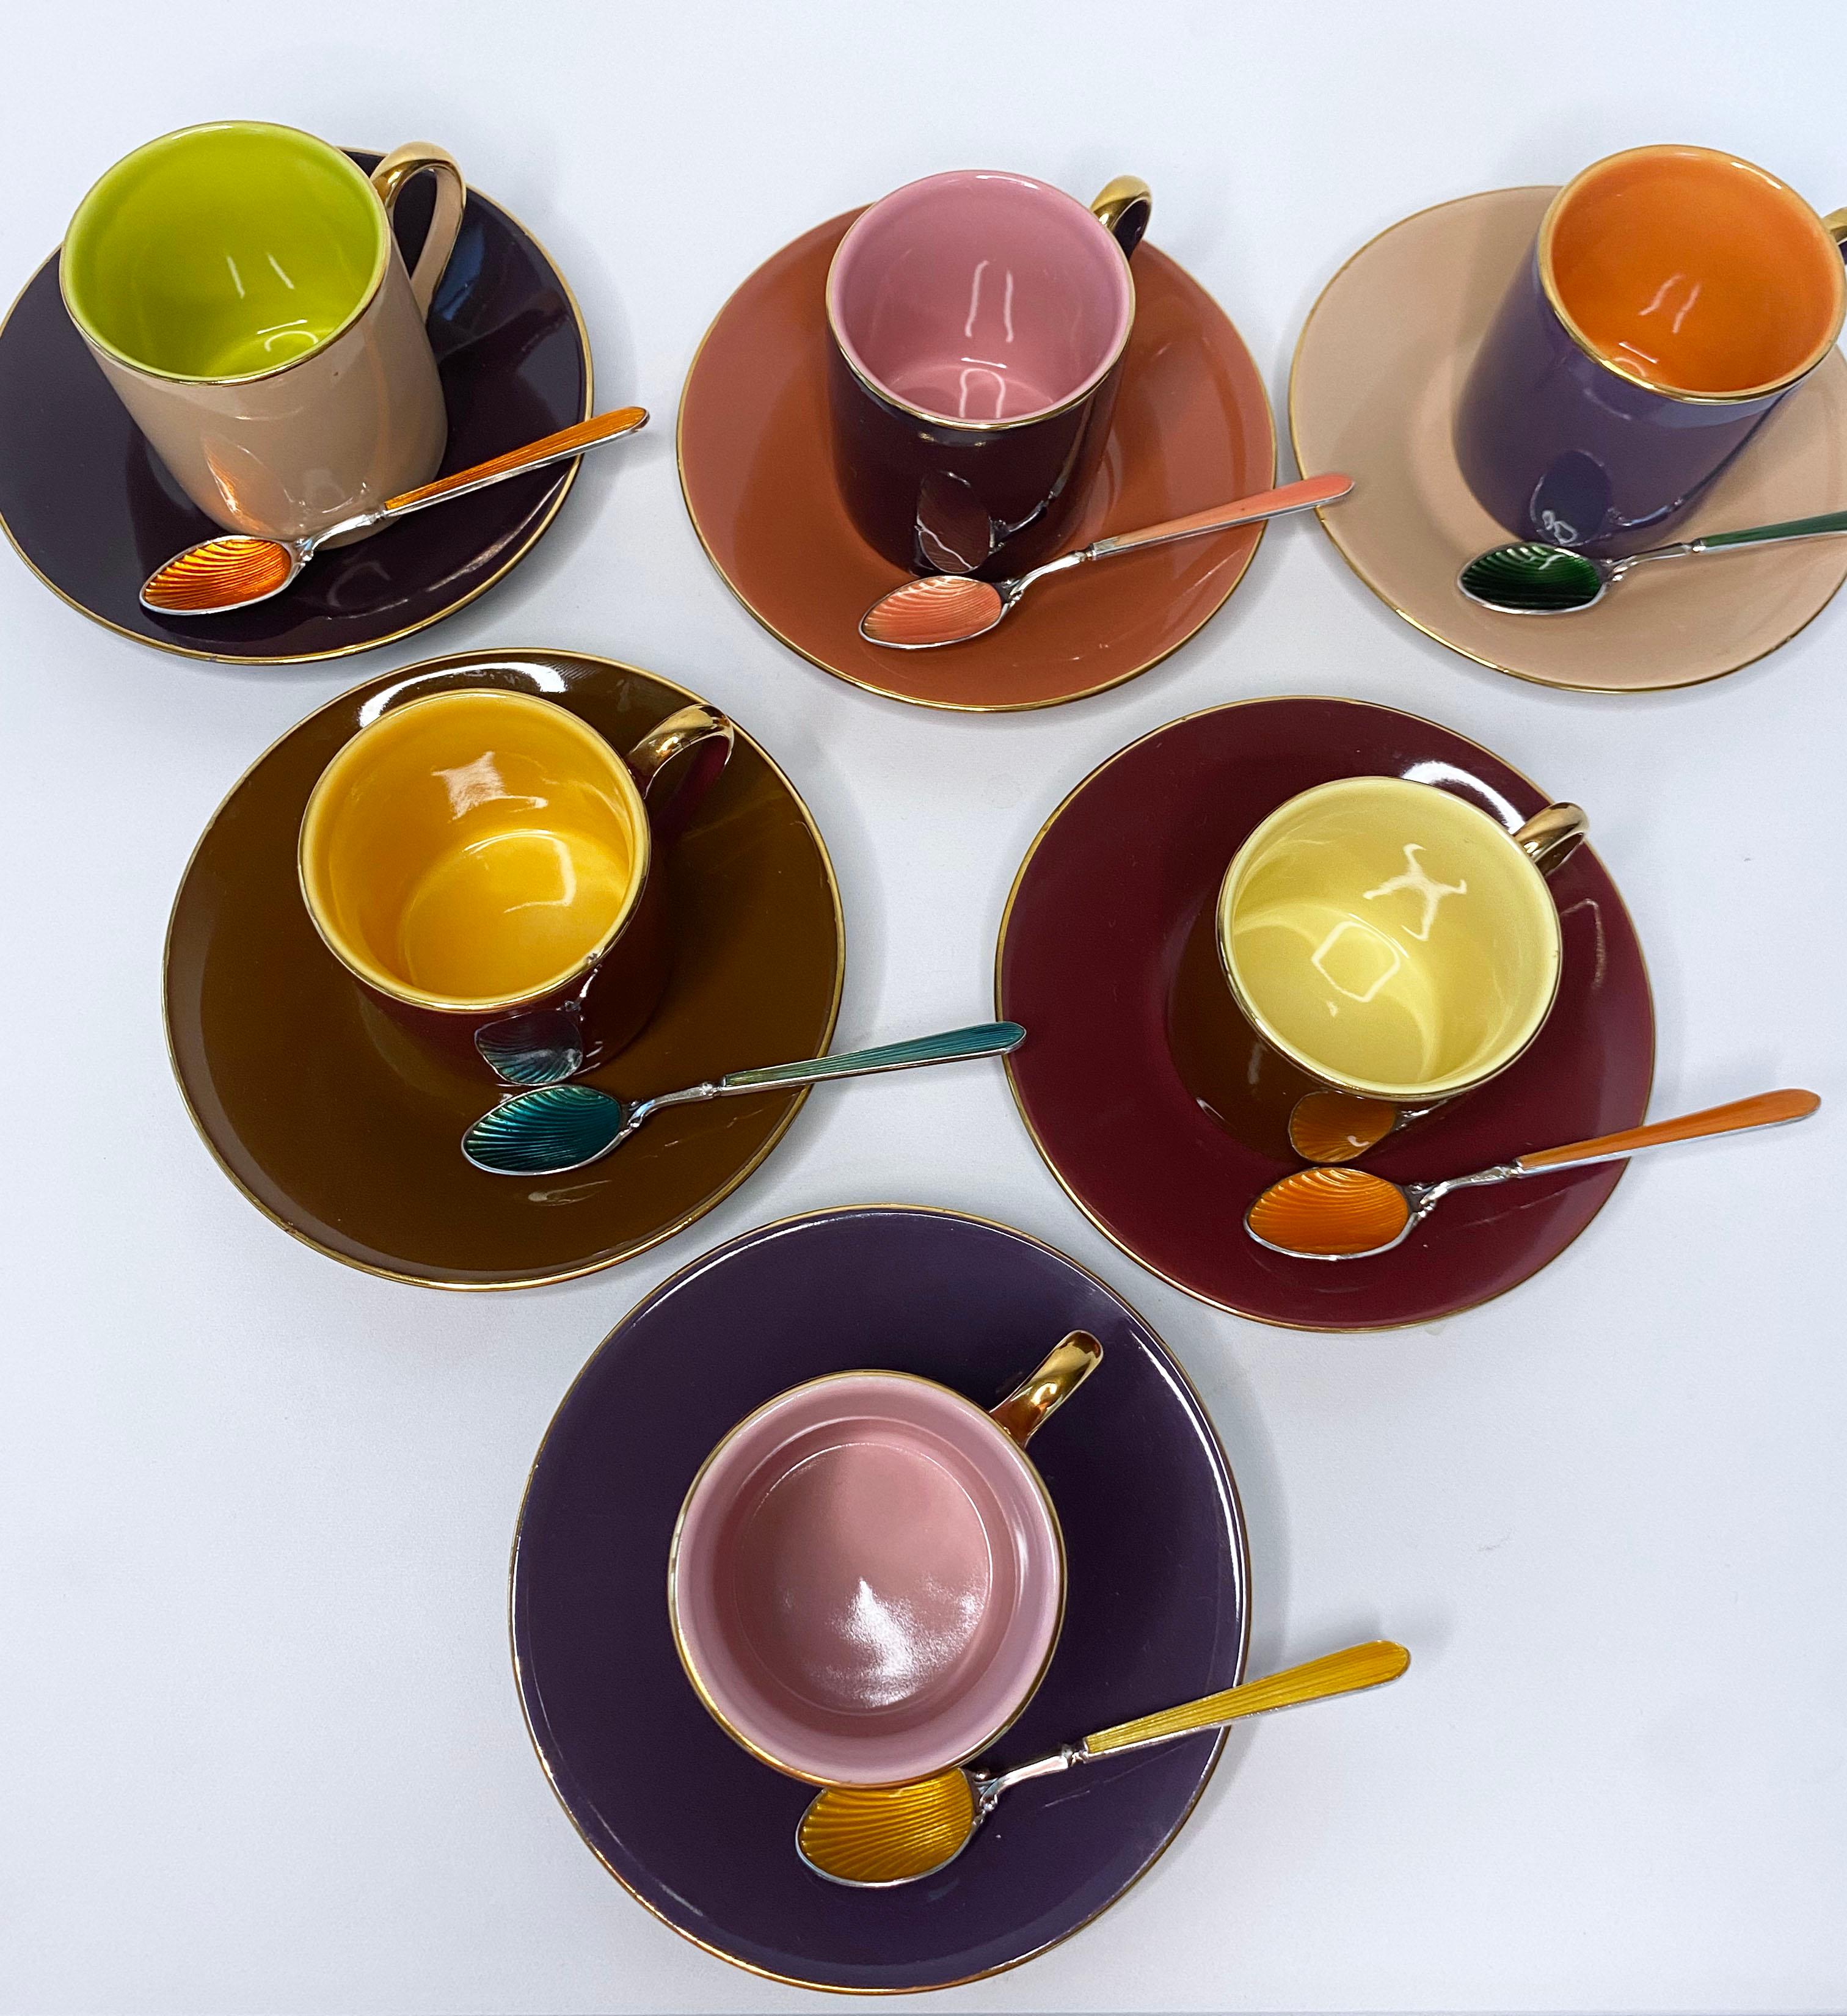 Lustiges und doch elegantes mehrfarbiges Kaffeetassen- und Löffelset. Die Kaffeetassen und -teller werden in einem 6er-Set geliefert, das eine schöne, warme, komplementäre Farbpalette aufweist, die sich leicht untereinander kombinieren lässt. Im